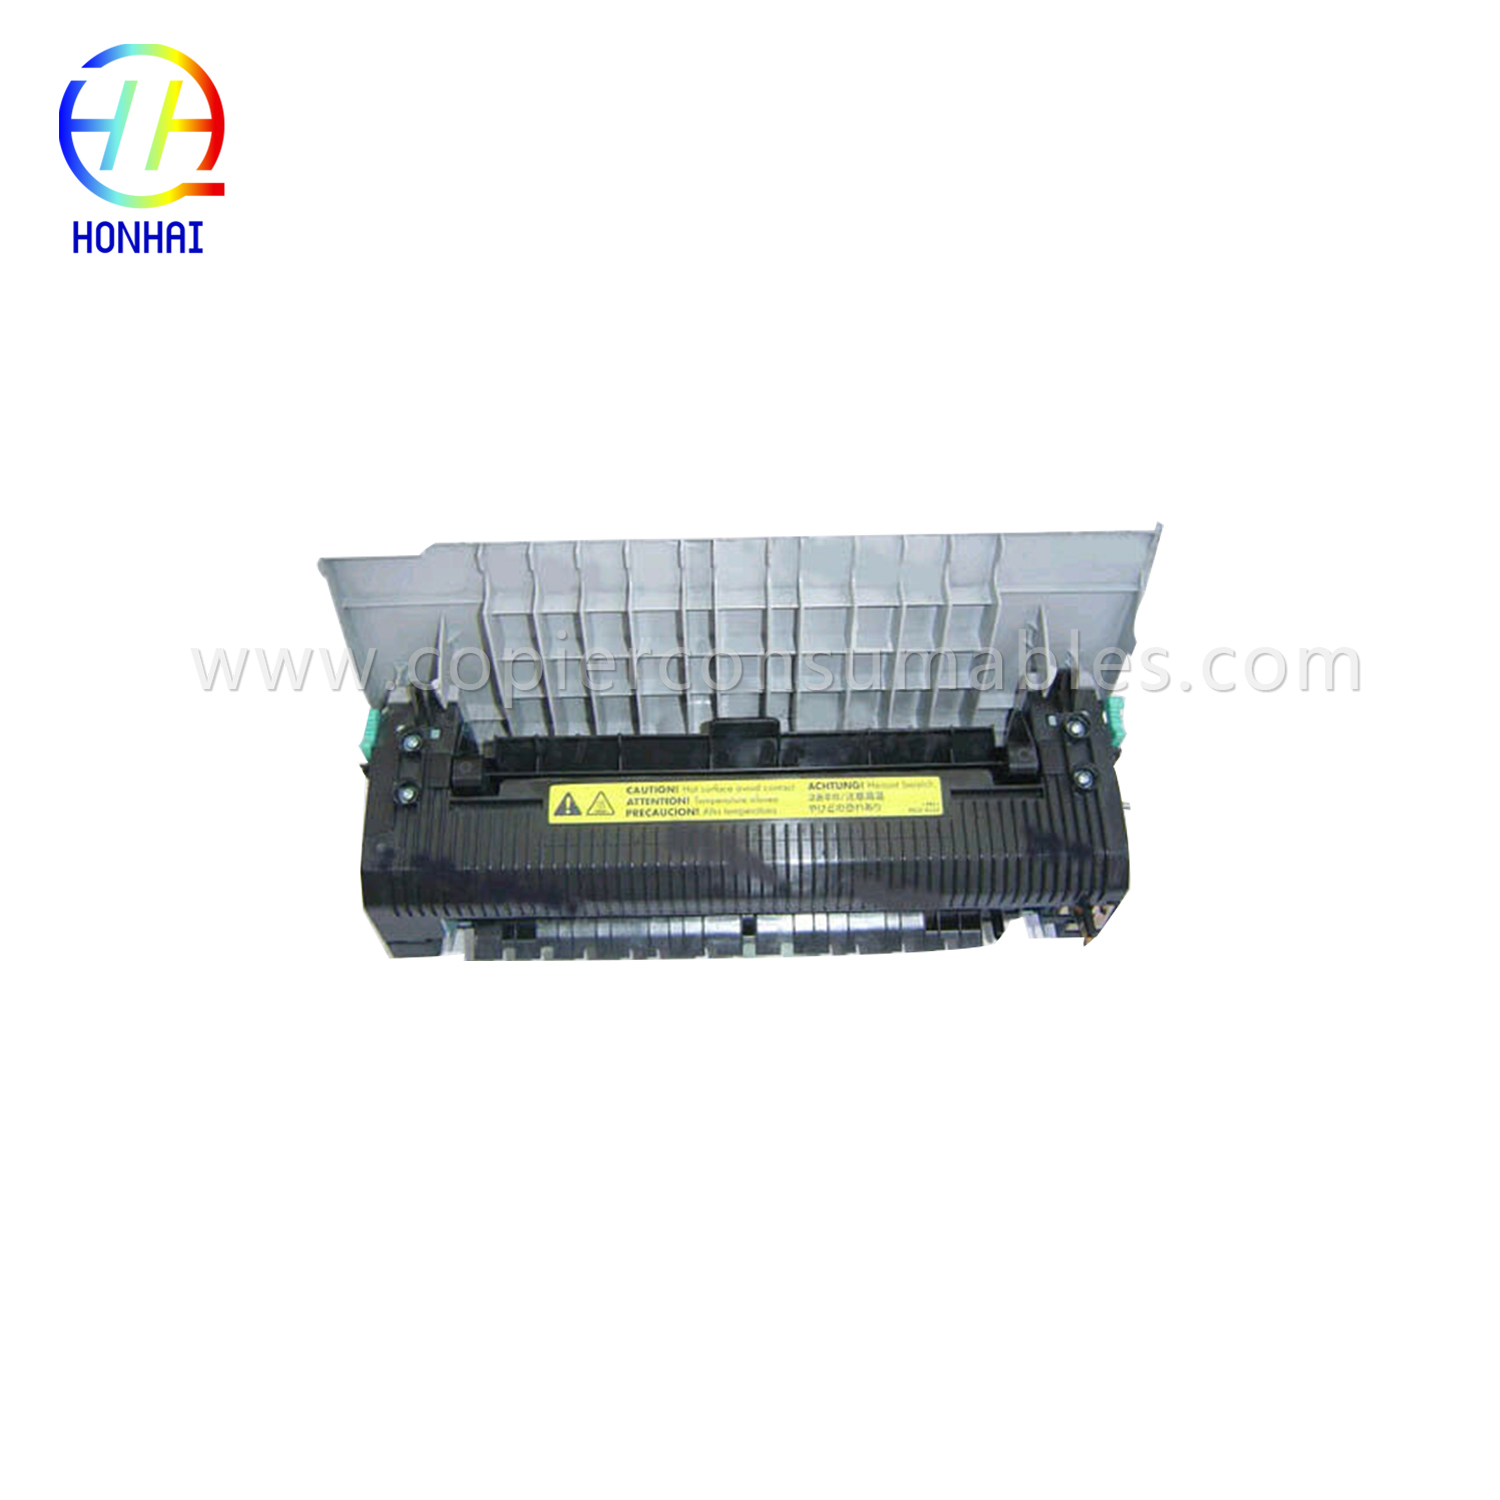 Unitat de fusor per a HP Color LaserJet 2550 2550L 2550ln 2550n RG5-7572-110Cn